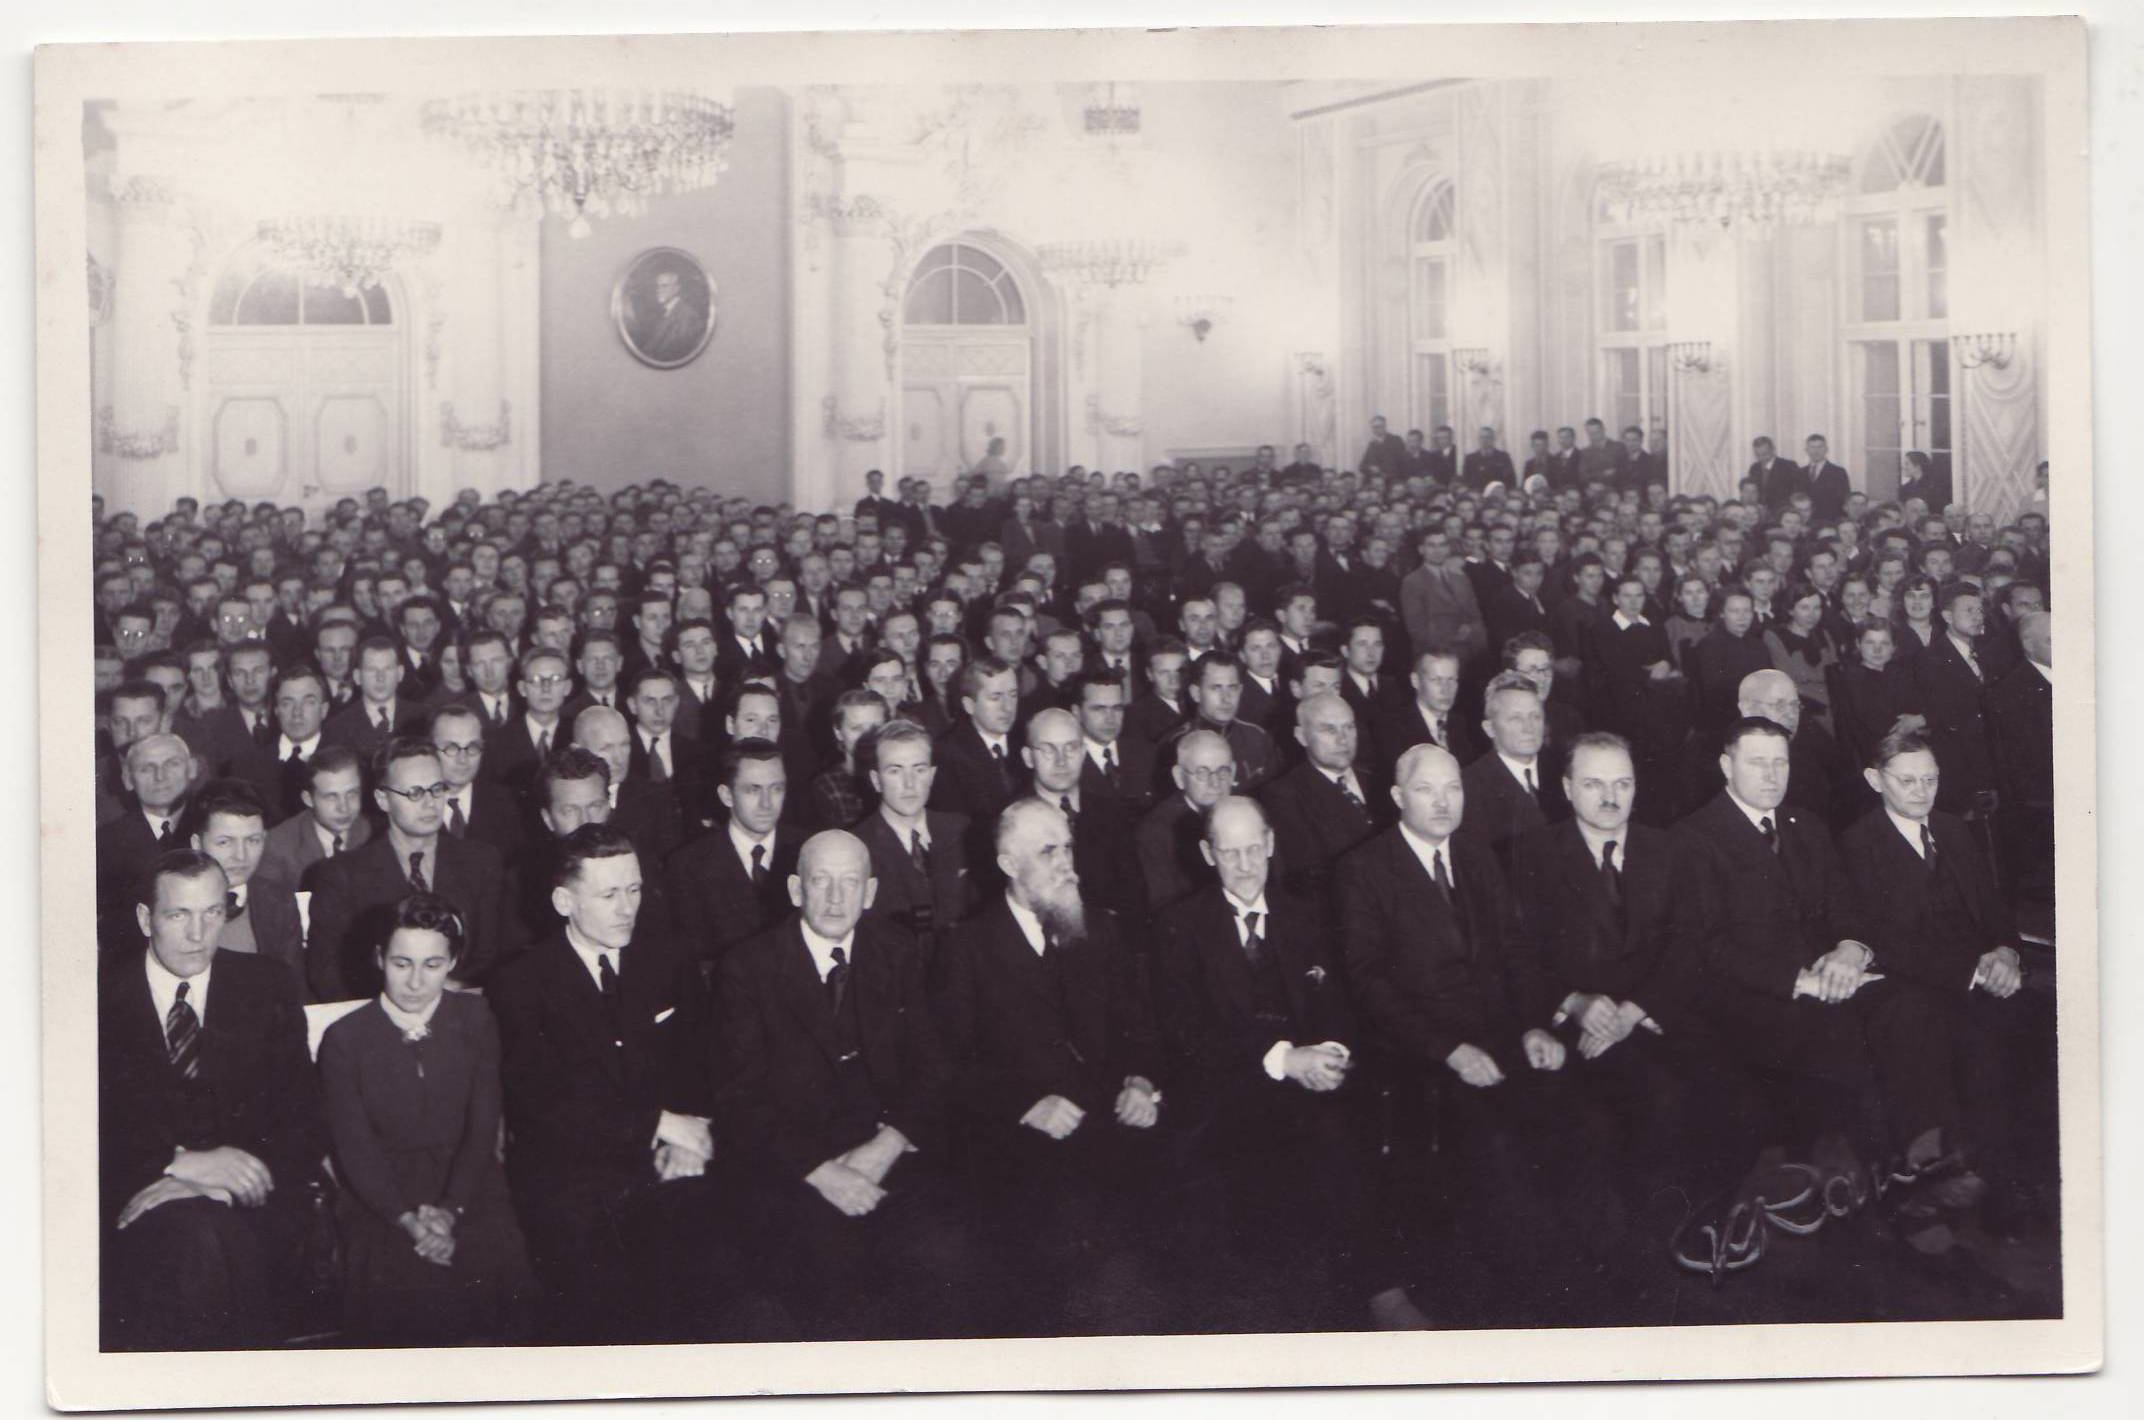 <p><strong>AULA</strong></p>  <p>&nbsp;</p>  <p>Jelgavas lauksaimniecības akadēmijas Aula, bijusī Kurzemes un Zemgales hercoga Svētku zāle.</p>  <p>&nbsp;</p>  <p>Tās vēlākais noformējums bijis atbilstošs 20. gadsimta 30. gadu eklektismam.&nbsp;</p>  <p>&nbsp;</p>  <p><em>Foto: 1939. gads</em></p>